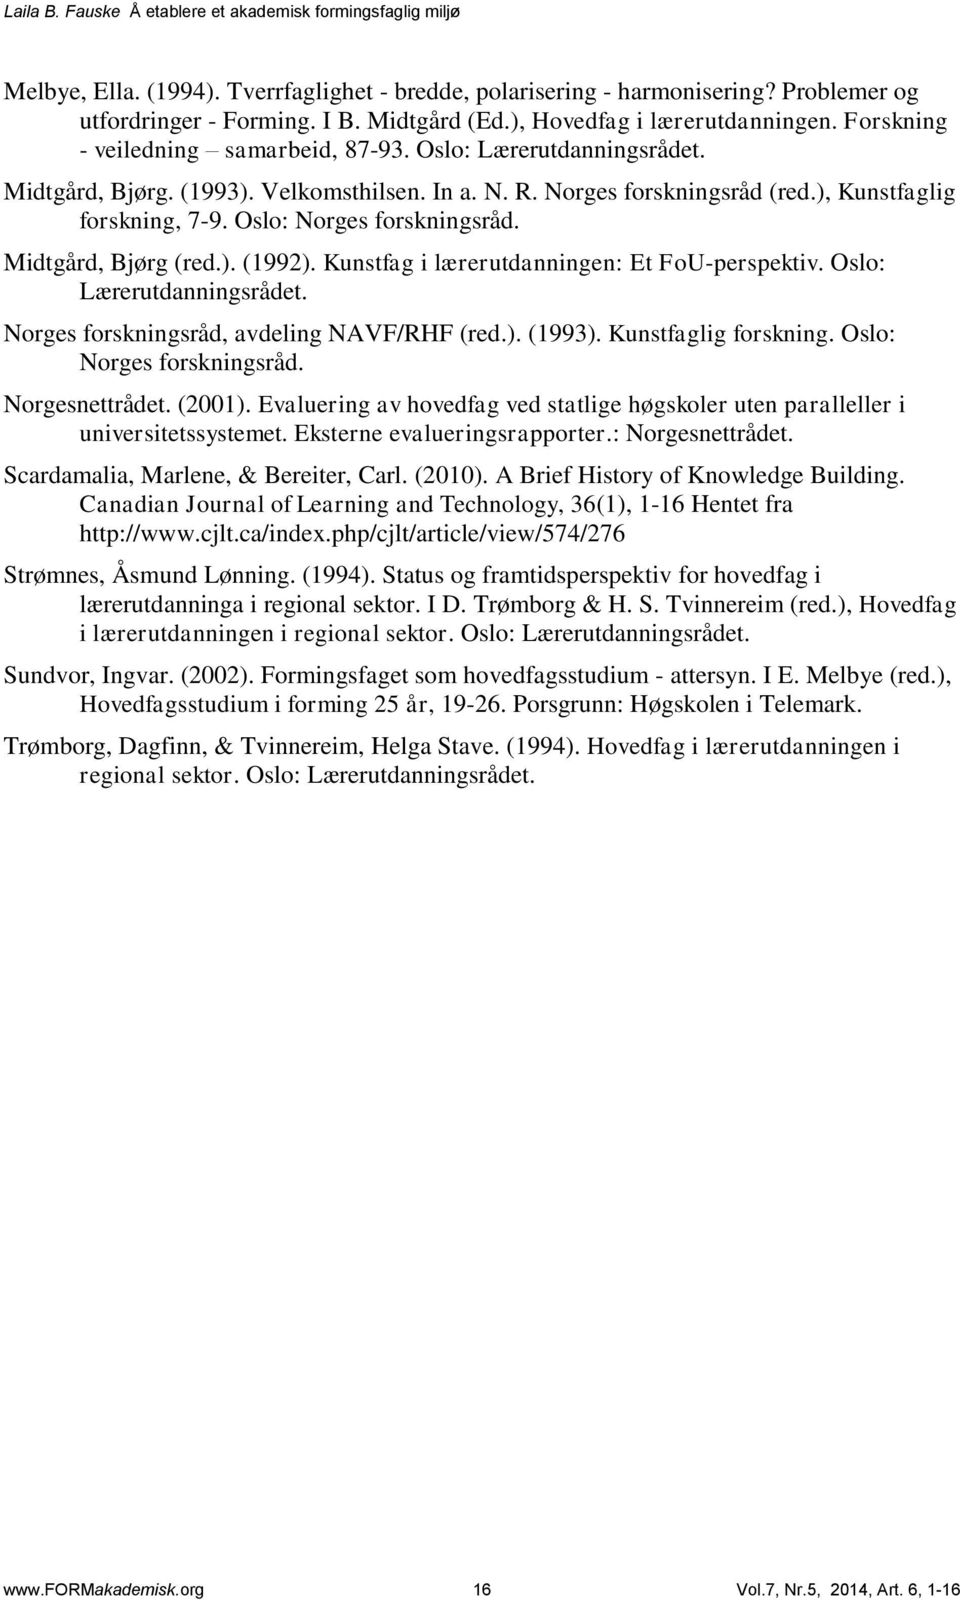 Oslo: Norges forskningsråd. Midtgård, Bjørg (red.). (1992). Kunstfag i lærerutdanningen: Et FoU-perspektiv. Oslo: Lærerutdanningsrådet. Norges forskningsråd, avdeling NAVF/RHF (red.). (1993).